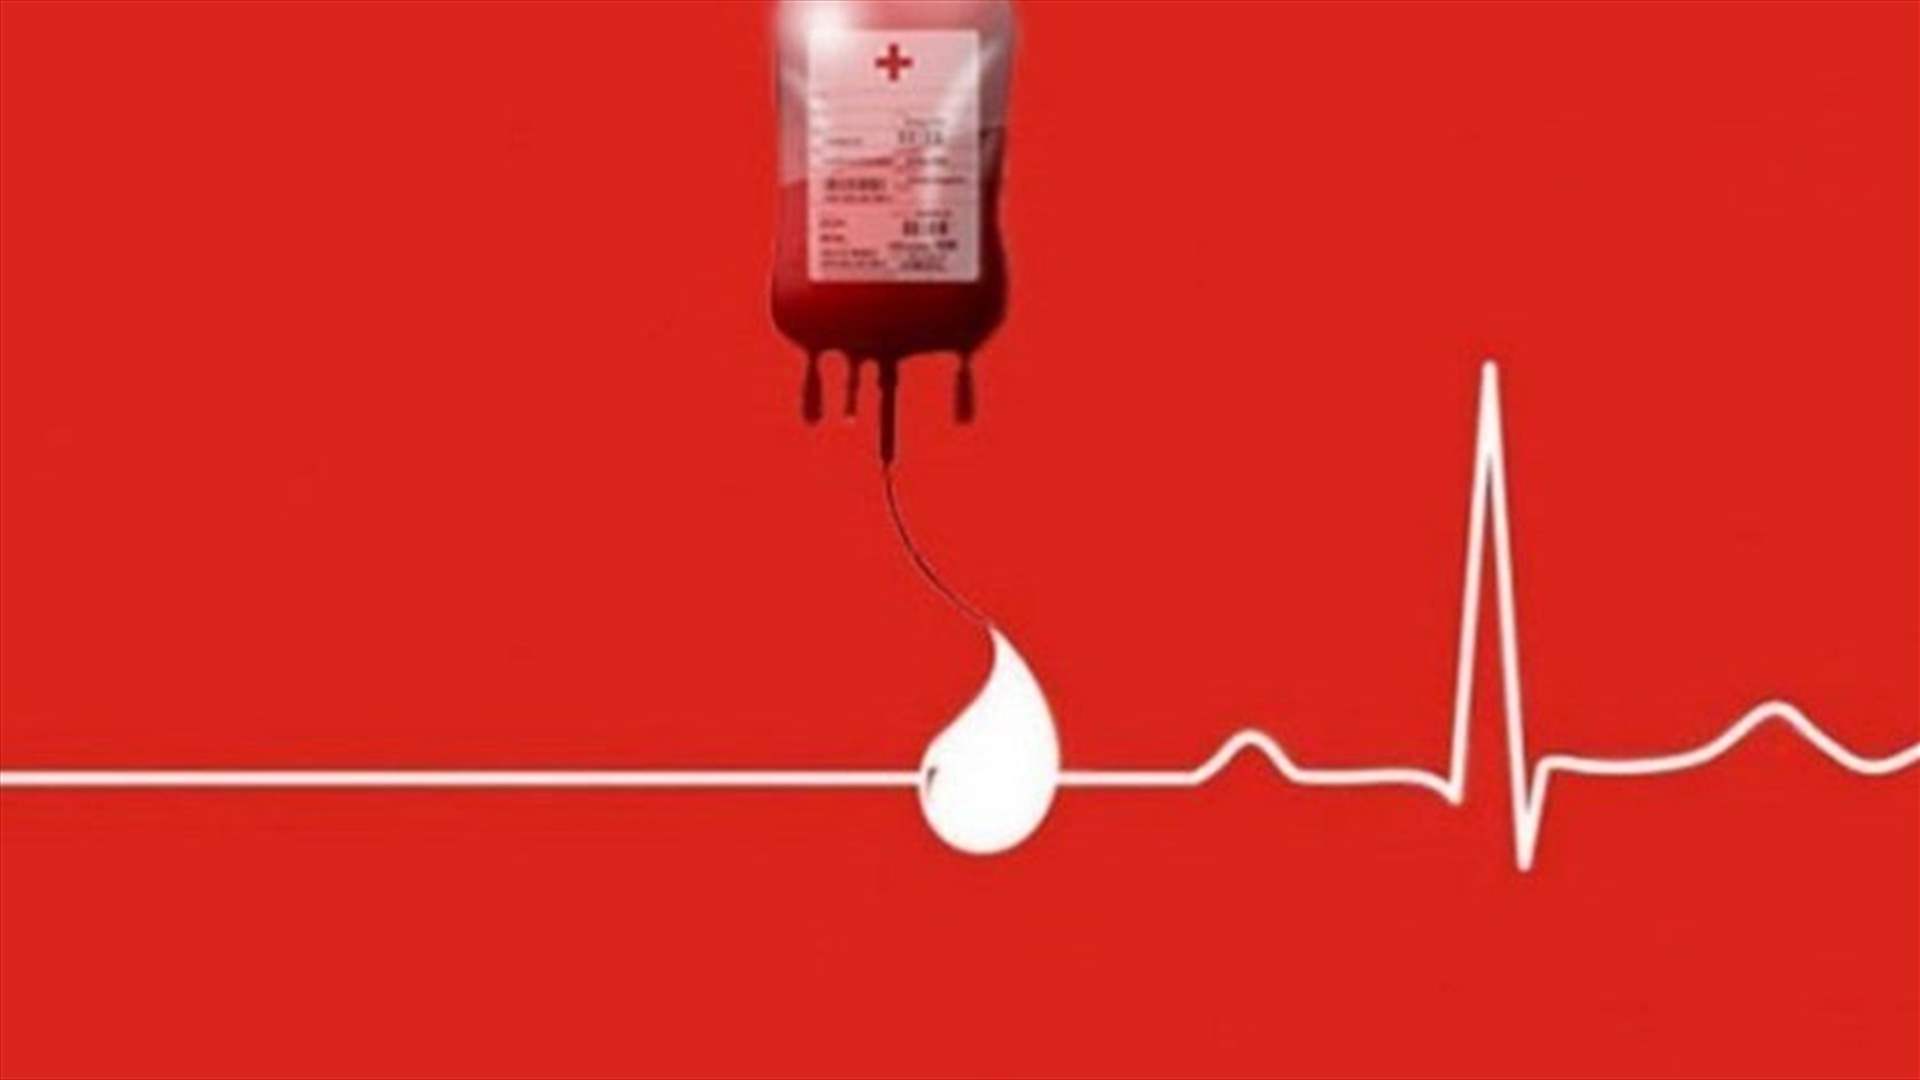 مريض بحاجة ماسة إلى دم من فئة A+ في مستشفى الجعيتاوي... للتبرع الاتصال على الرقم 71450744